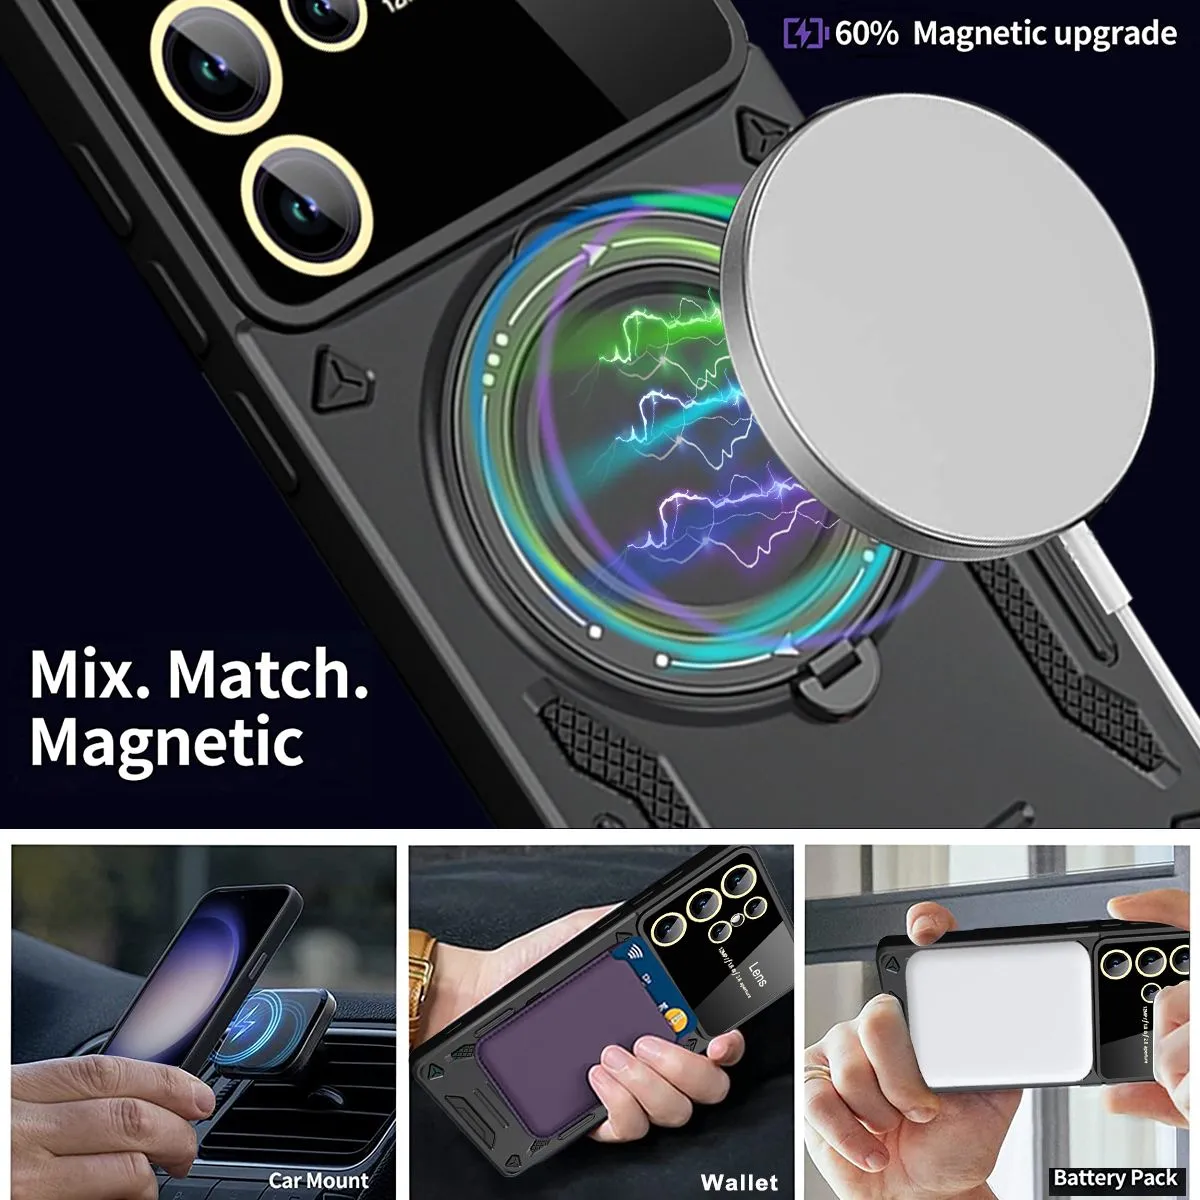 Support magnétique pour téléphone iRing - MagSafe - iPhone - Blanc  céramique